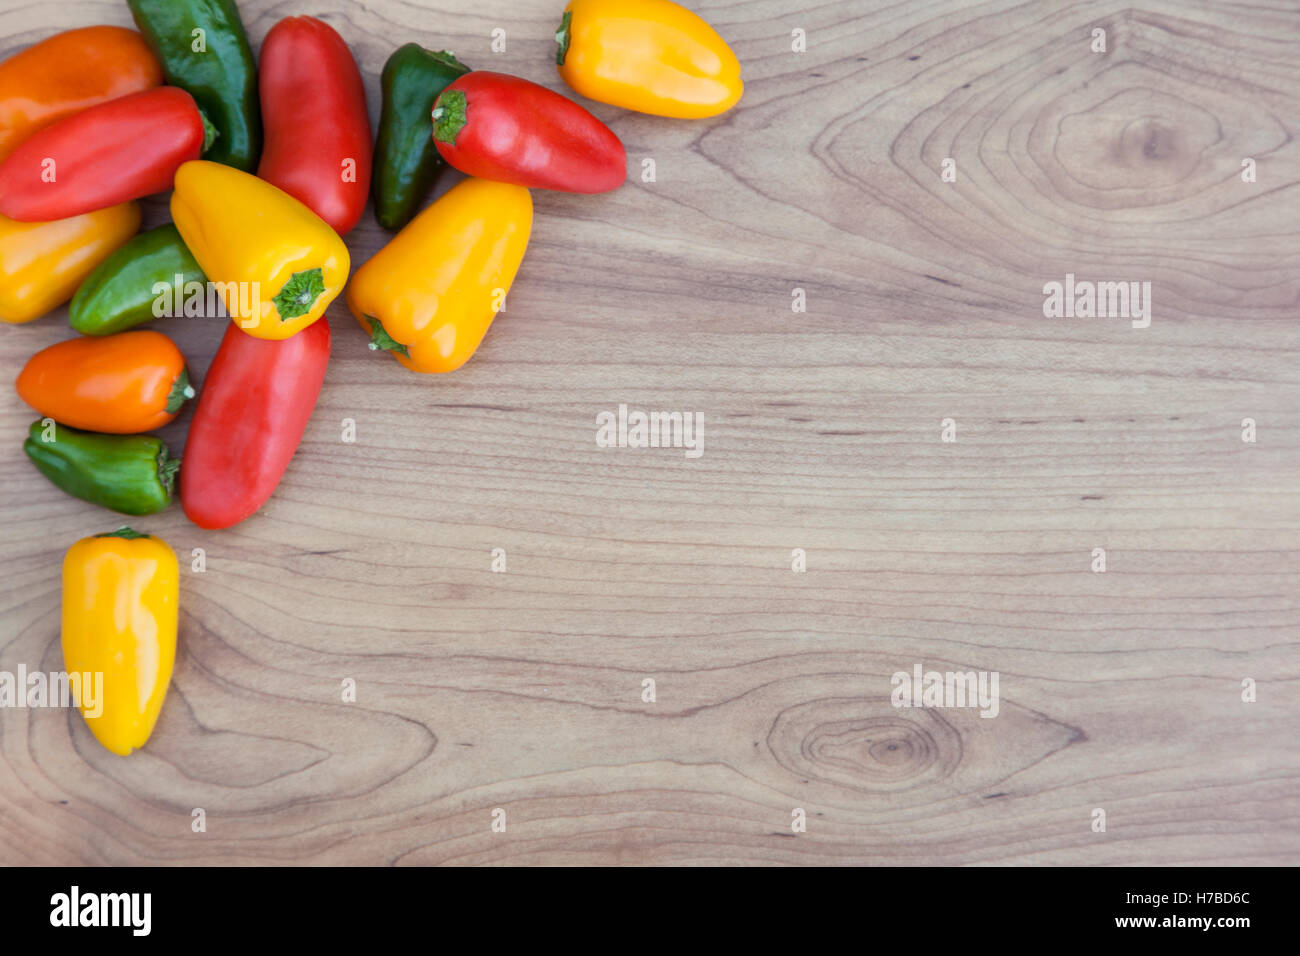 Carni rosse, verdi e le arance peperoncino (capsicum) su sfondo di legno con spazio di copia Foto Stock